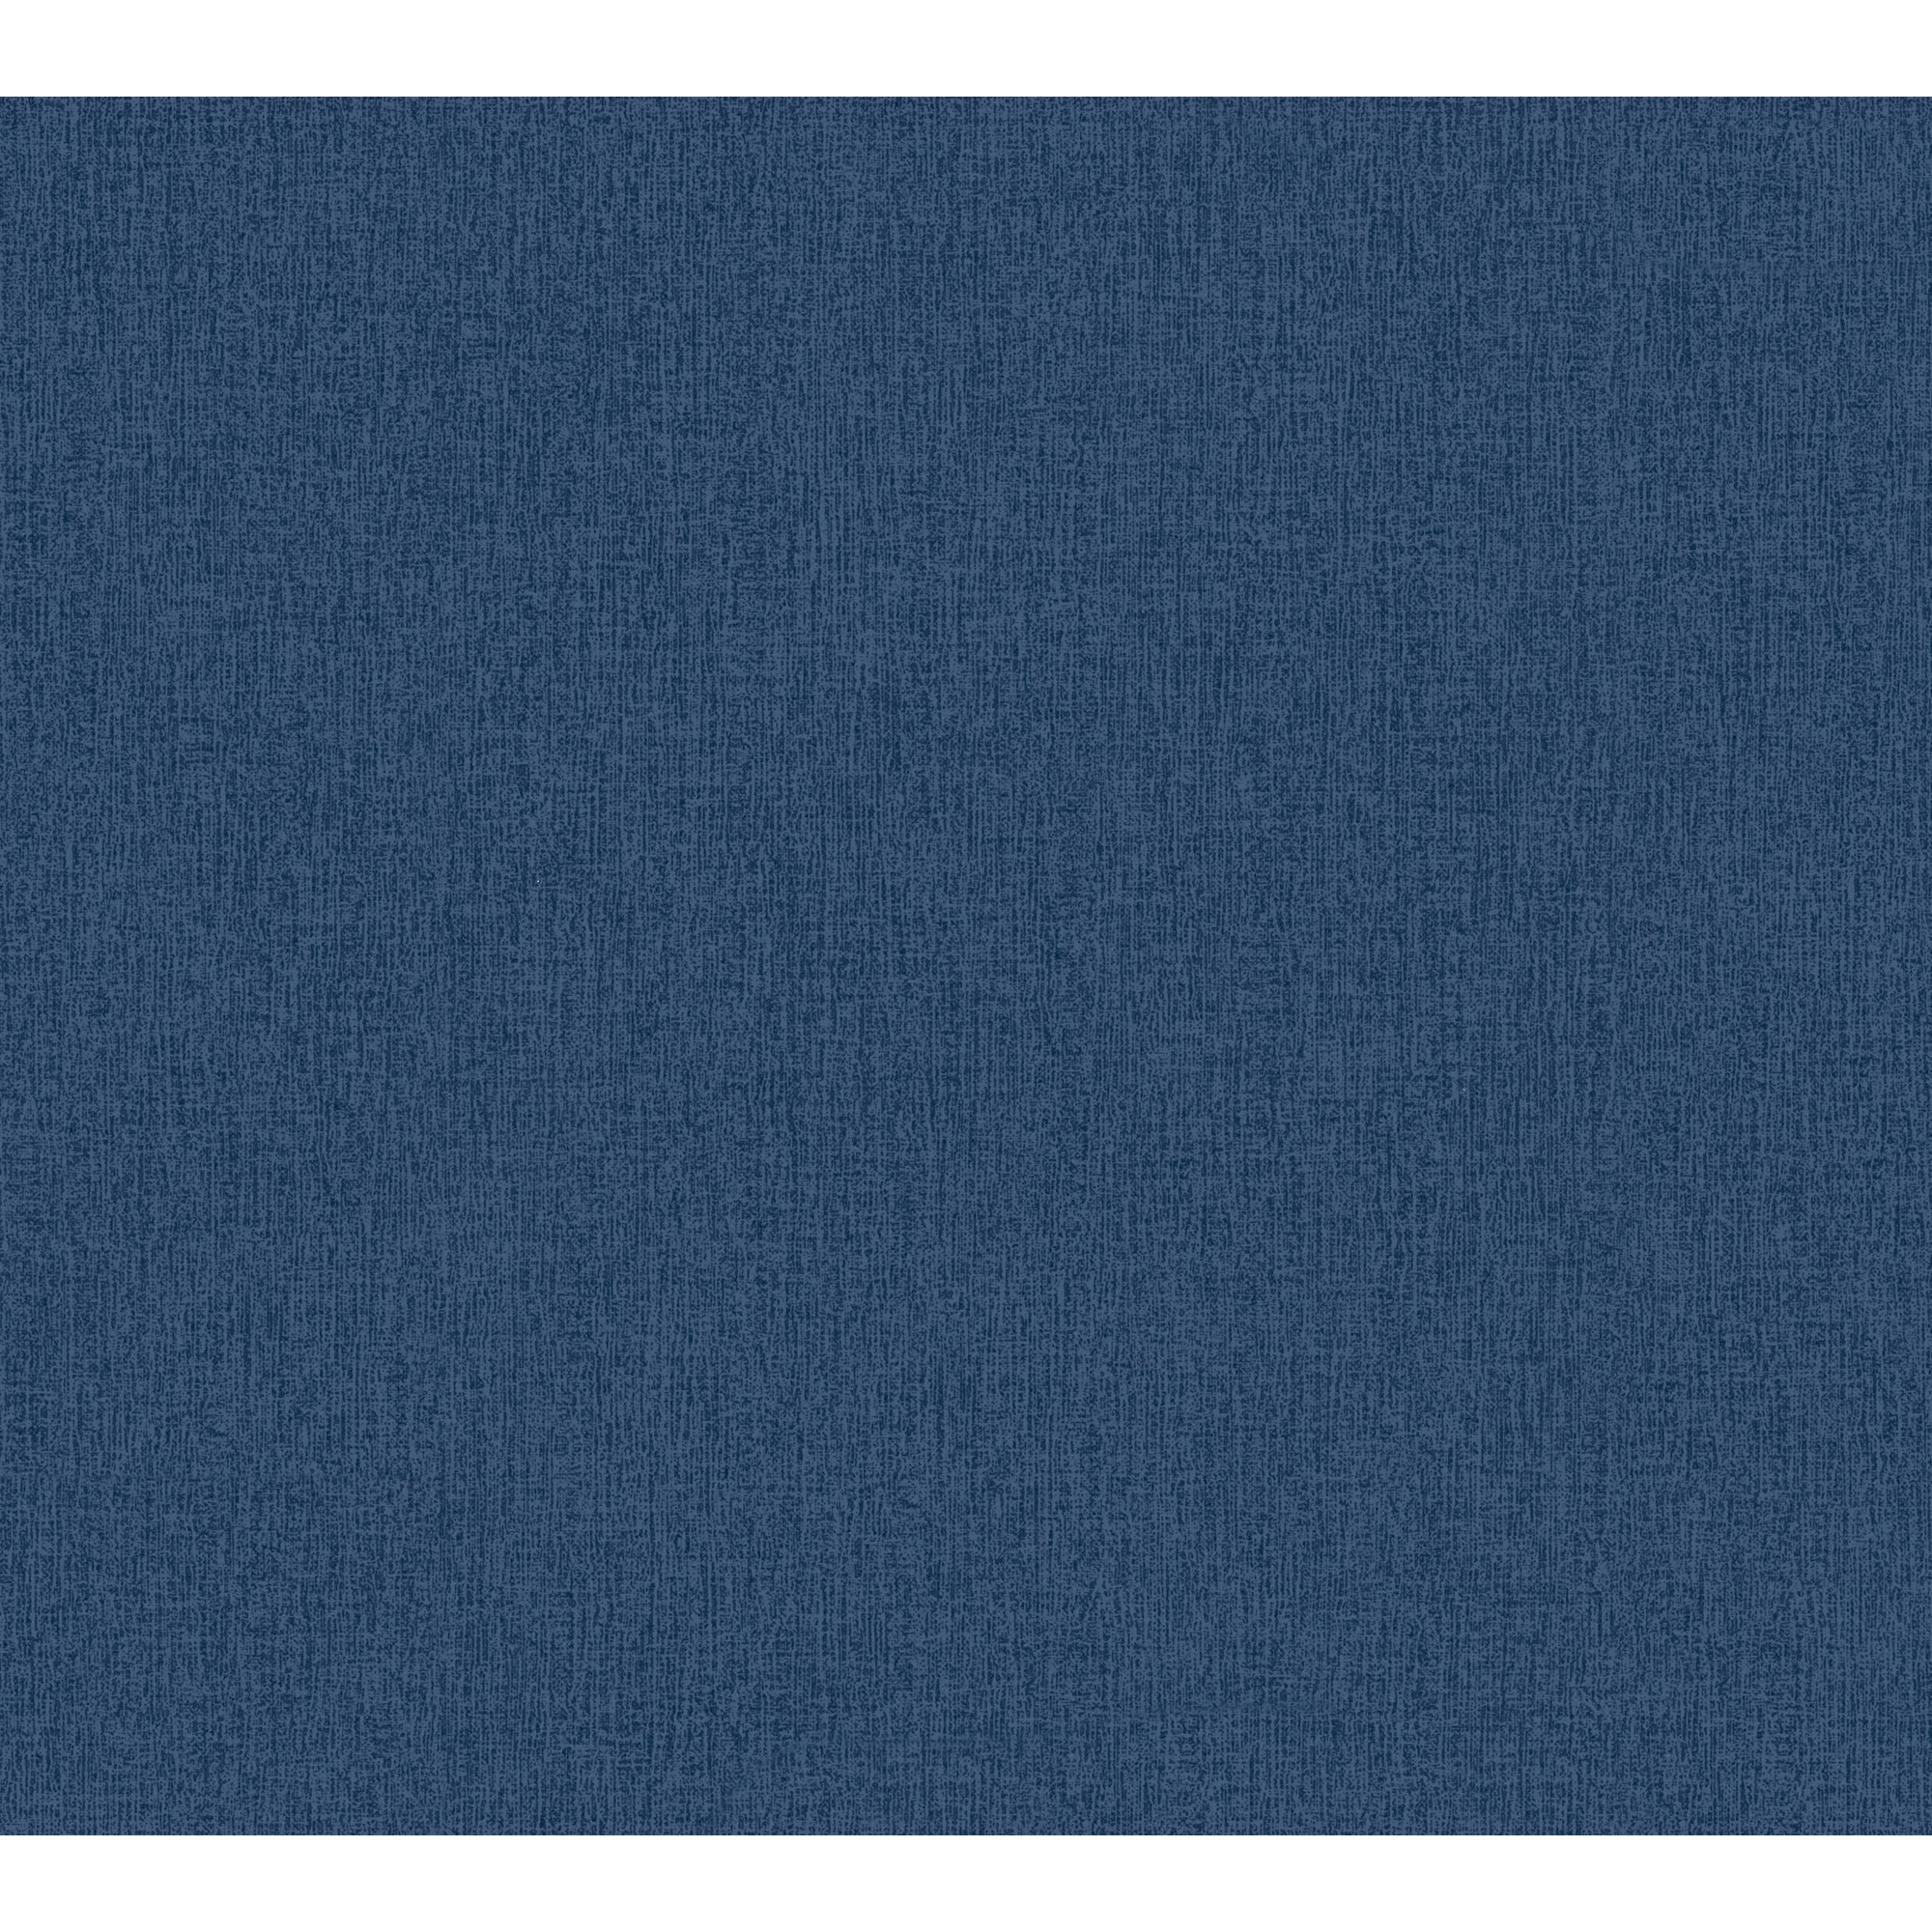 Vliestapete 'Daniel Hechter 6' Uni blau 53 x 1005 cm + product picture